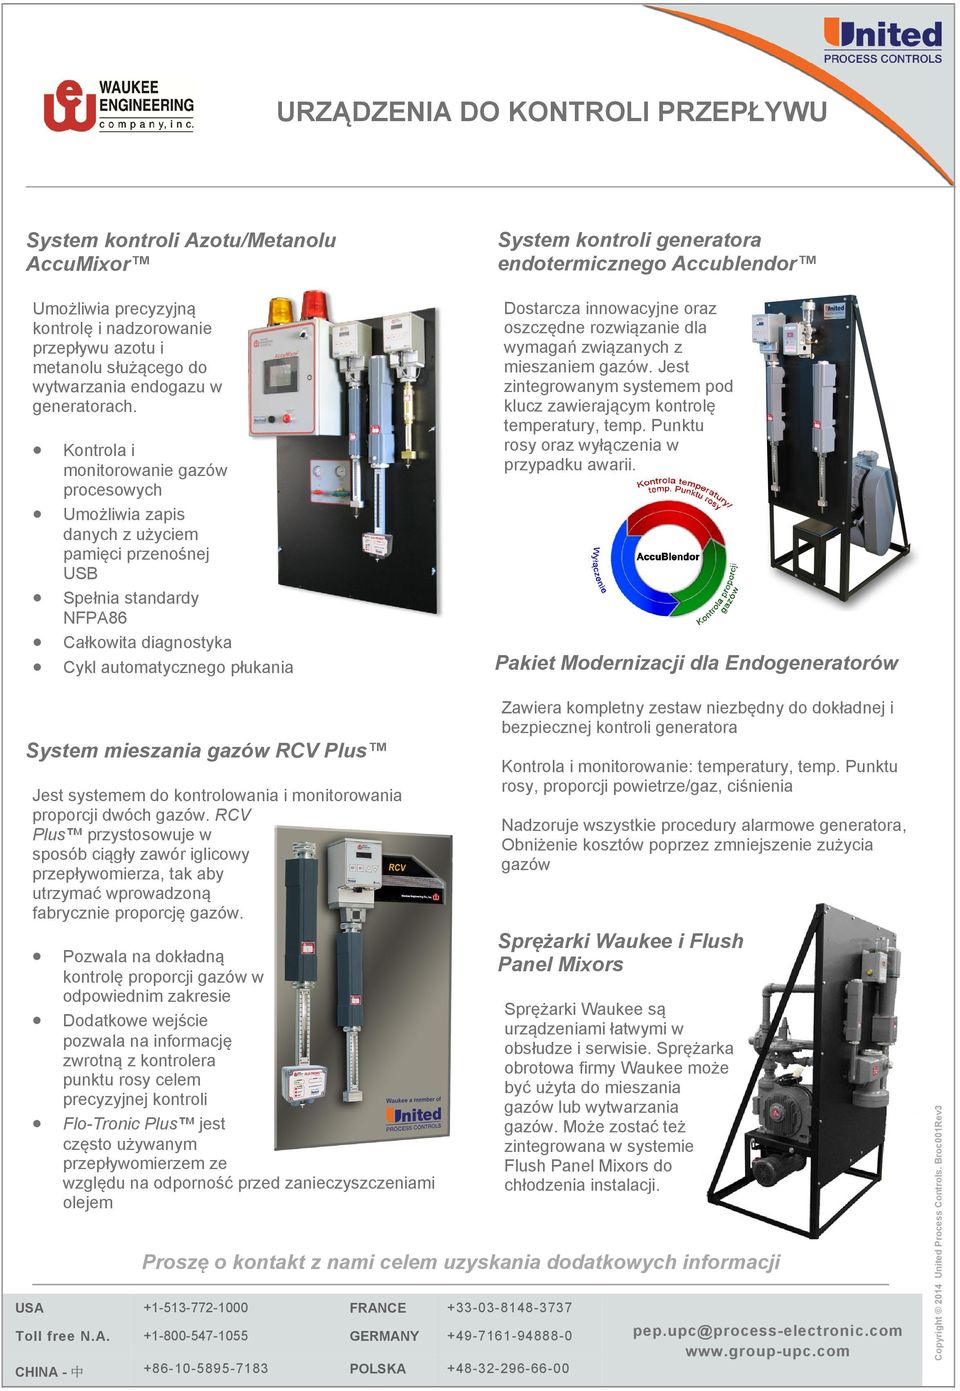 generatora endotermicznego Accublendor Dostarcza innowacyjne oraz oszczędne rozwiązanie dla wymagań związanych z mieszaniem gazów.